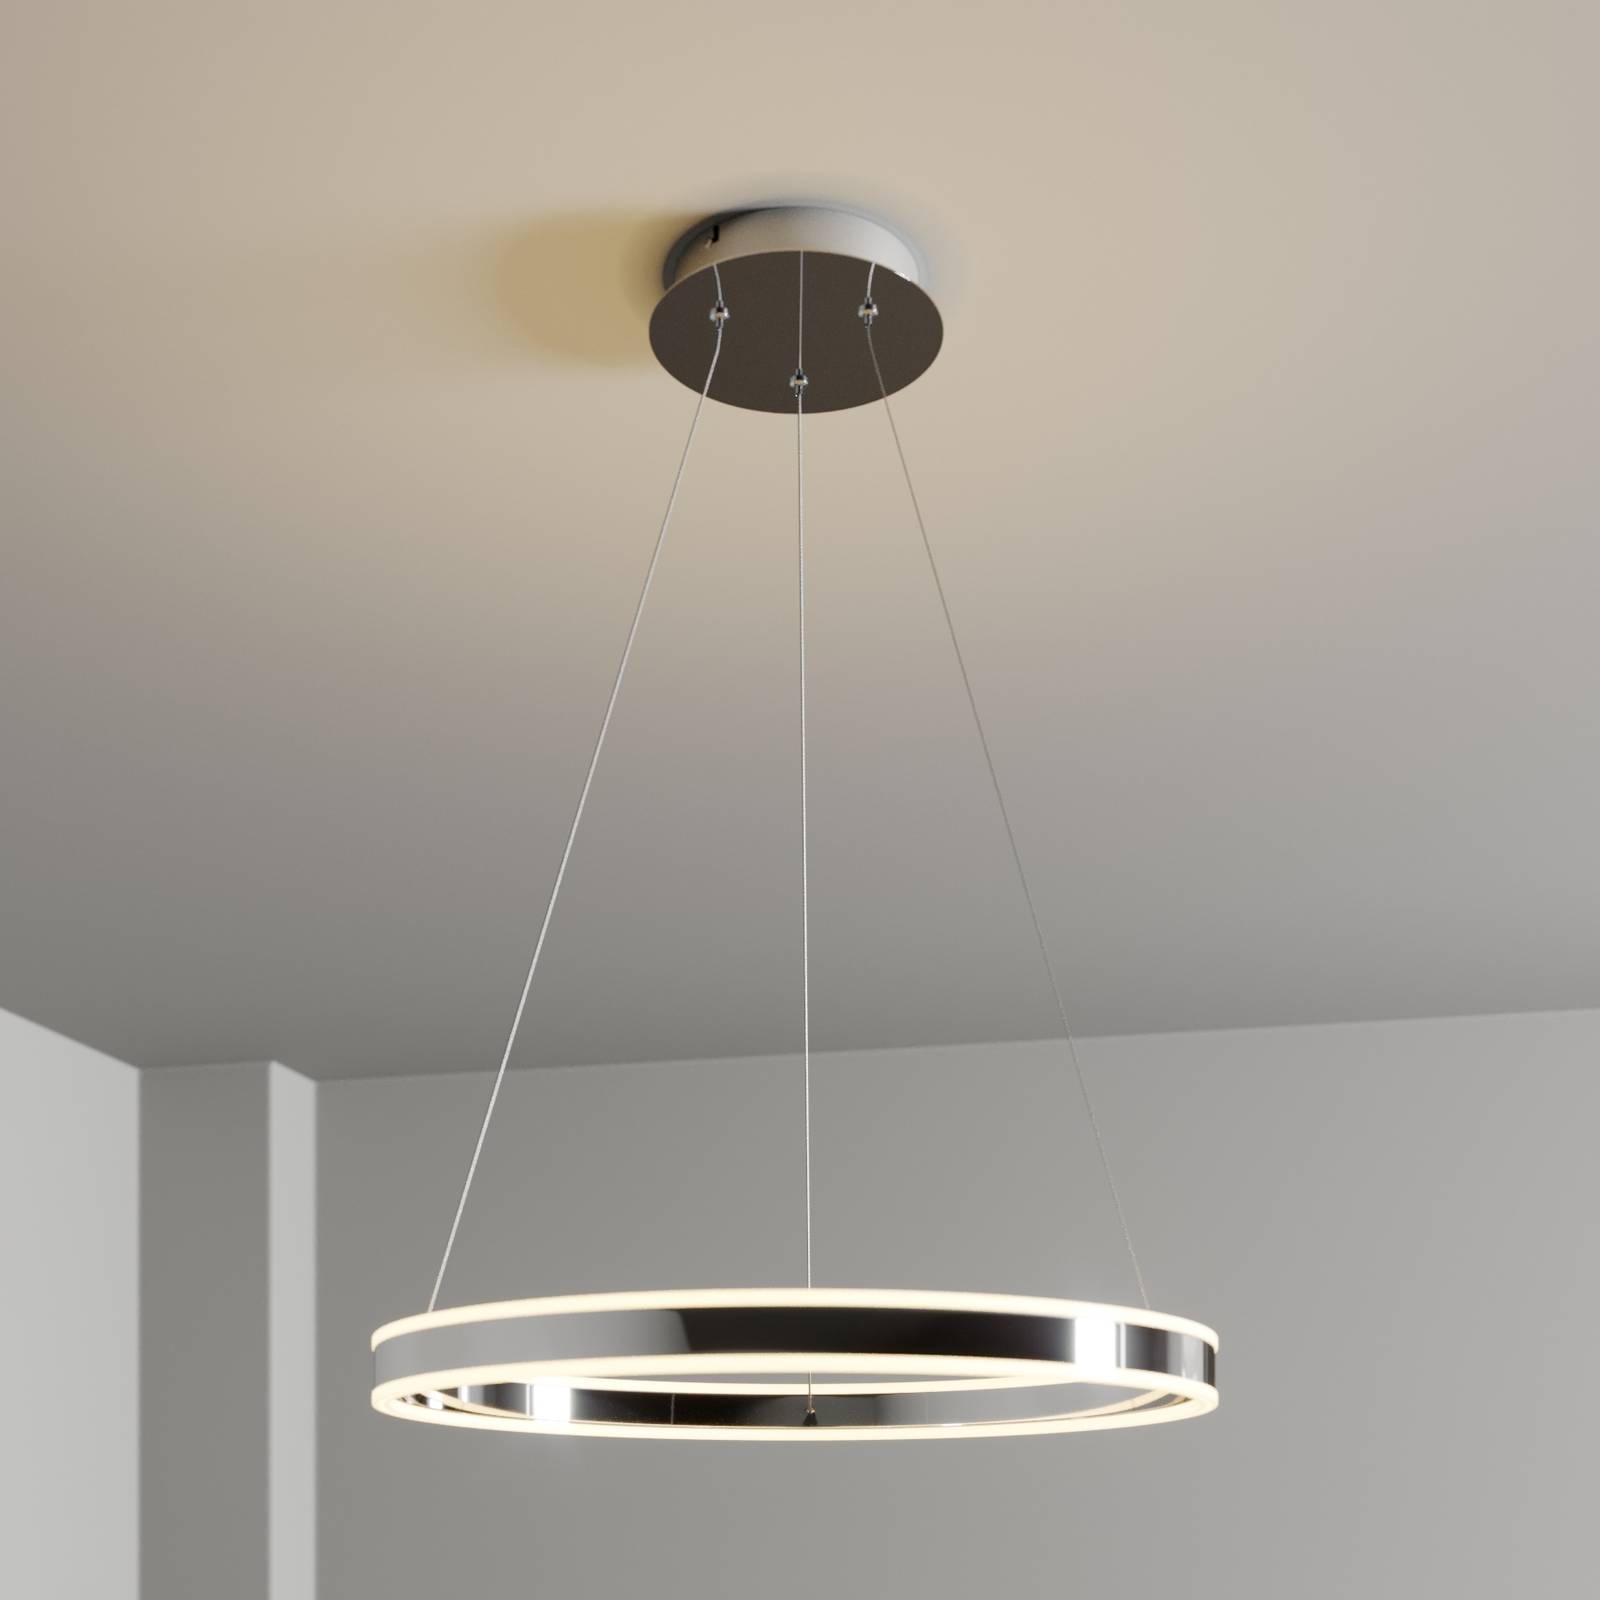 LED hanglamp Lyani in chroom, dimbaar, 60 cm